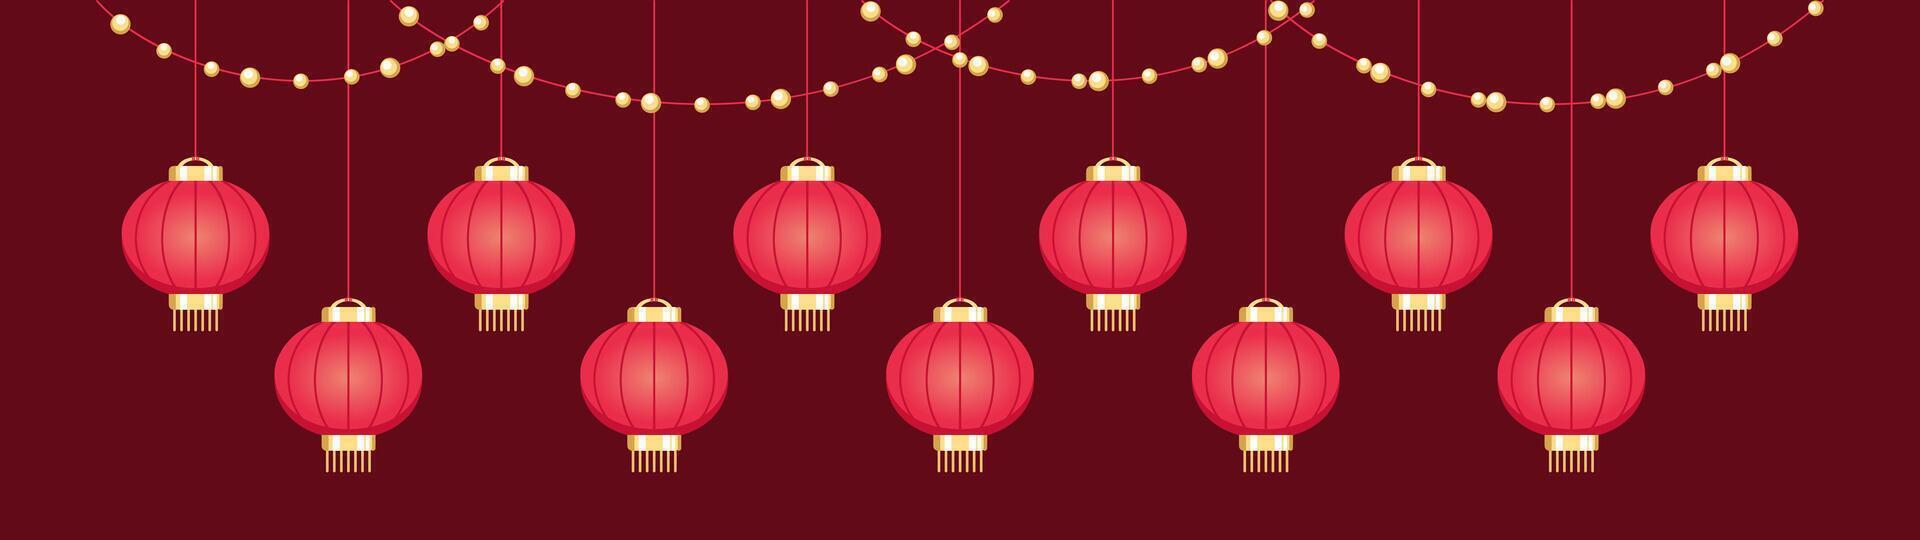 suspensão chinês lanternas bandeira fronteira, lunar Novo ano e meio do outono festival gráfico vetor